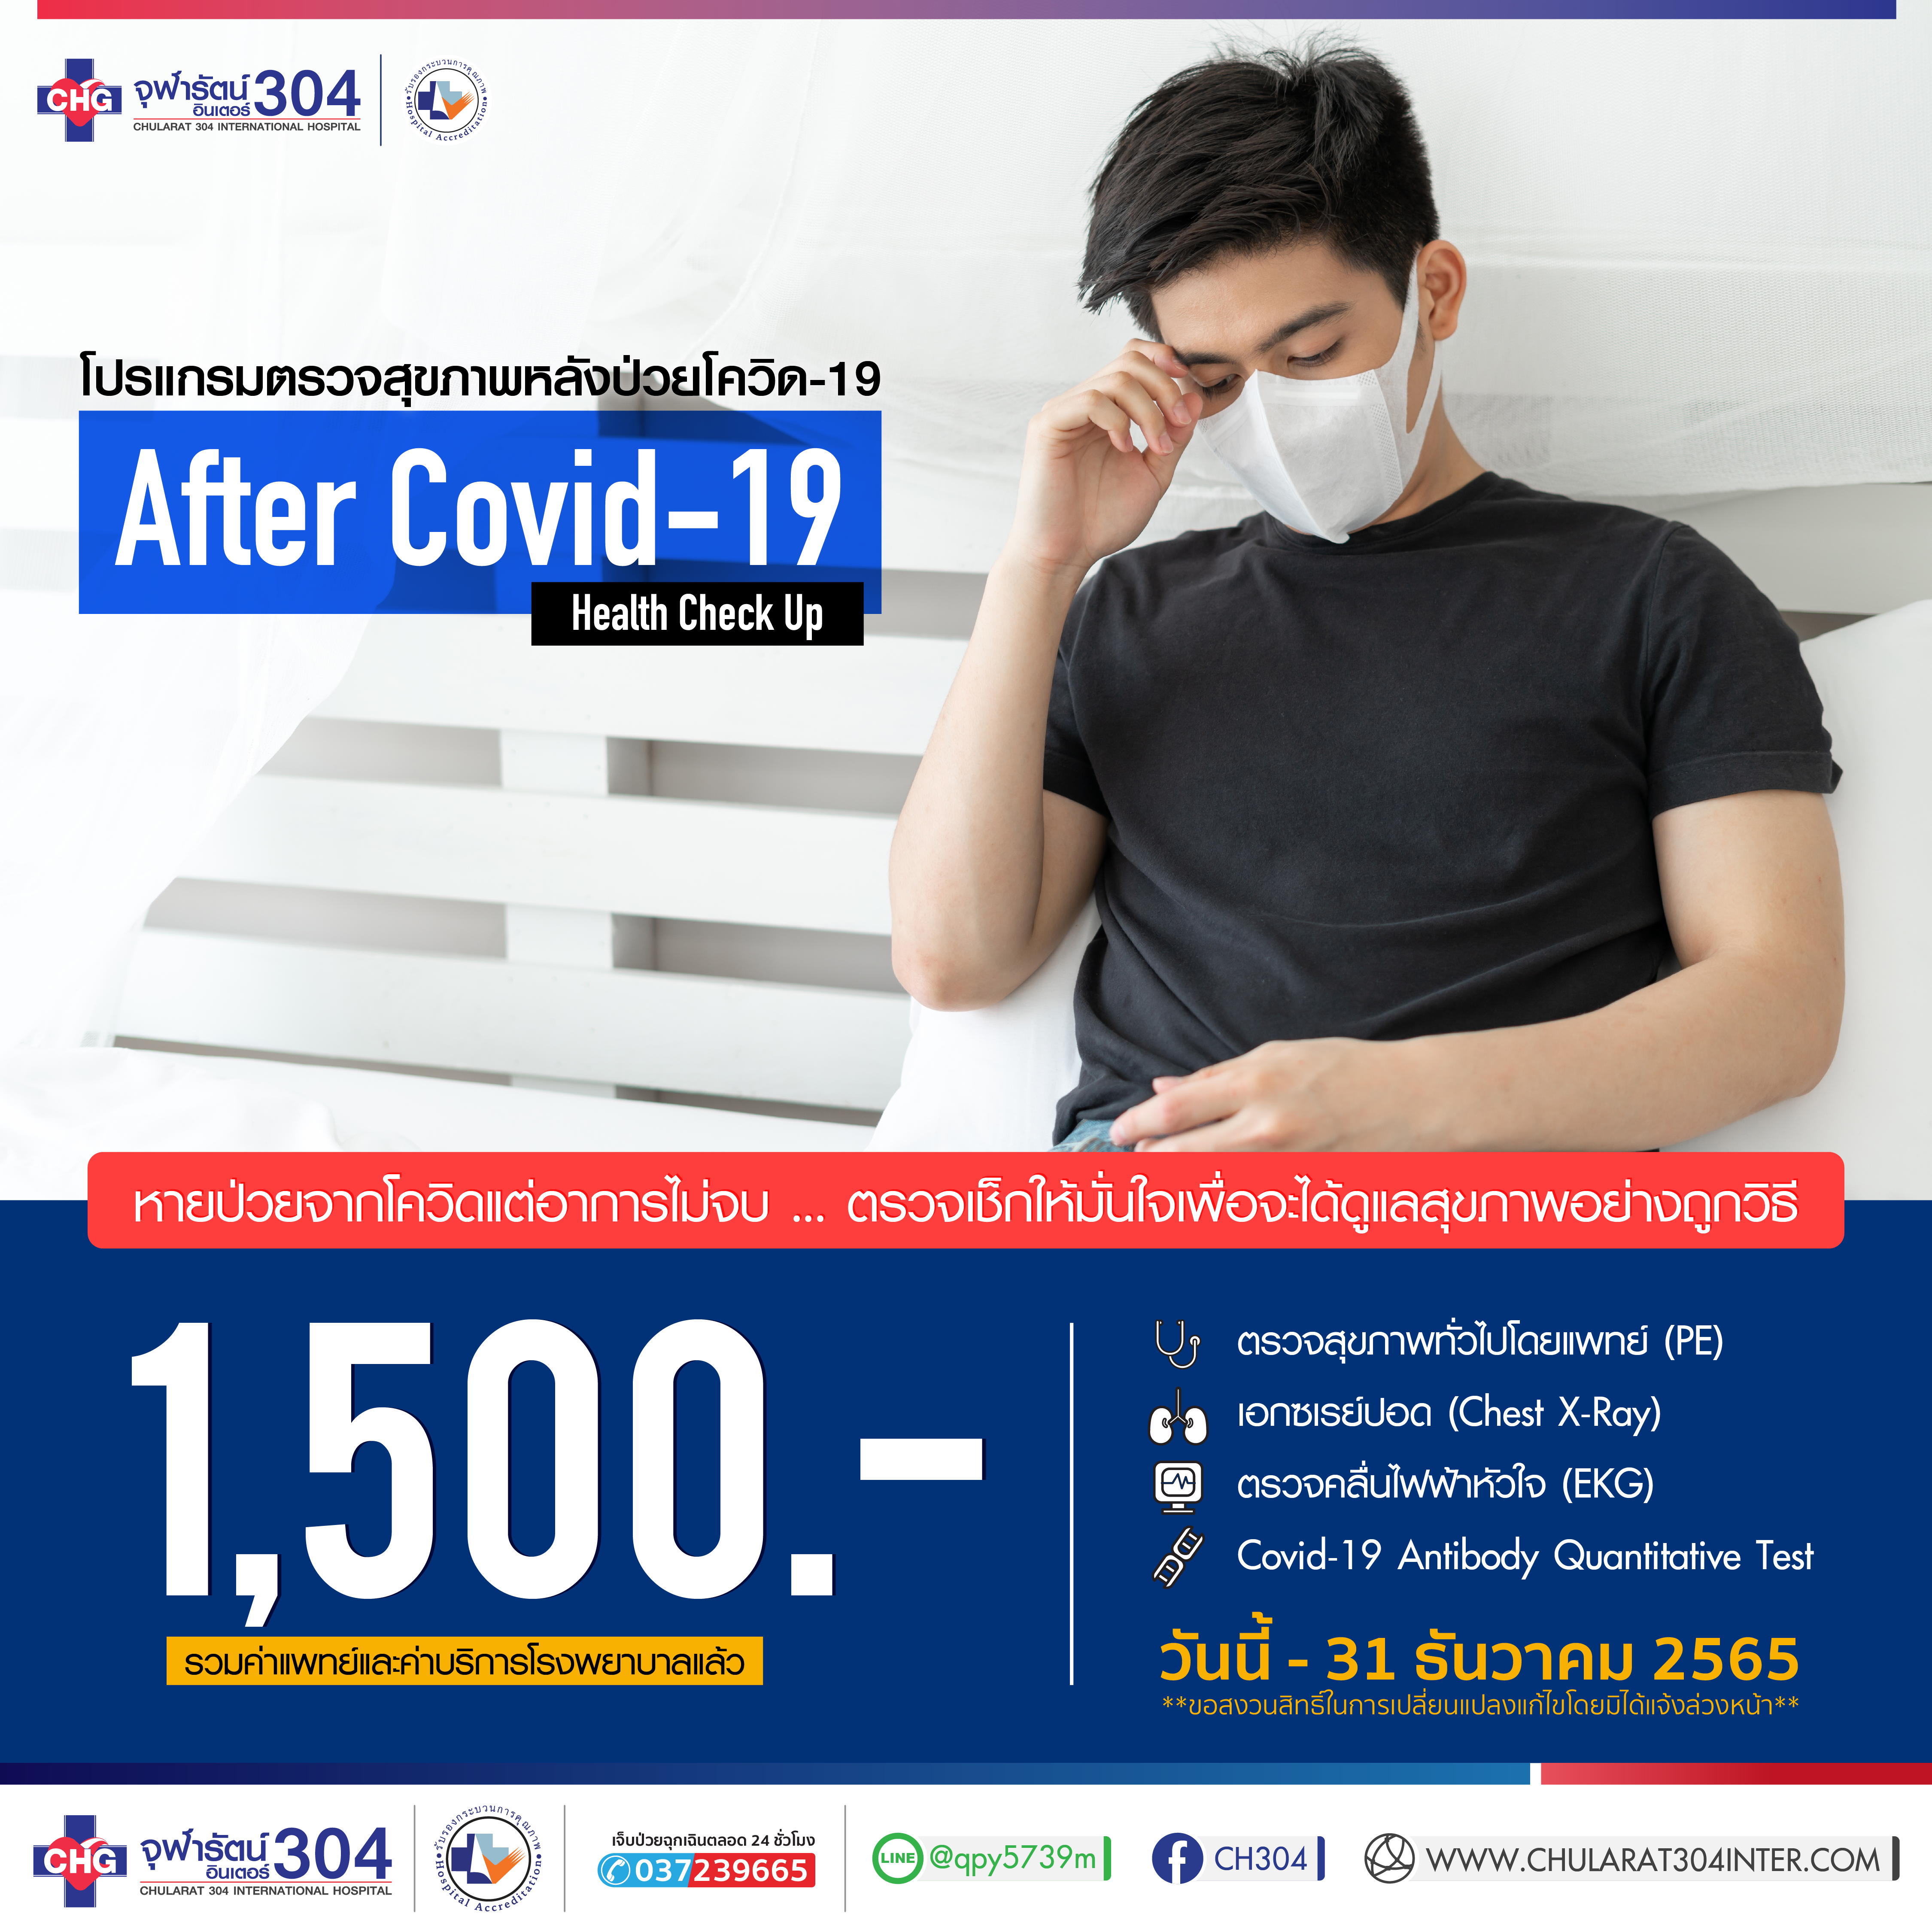 โปรแกรมตรวจสุขภาพหลังติดเชื้อ Covid-19 After Covid - แพ็คเกจโปรโมชั่น - โรงพยาบาลจุฬารัตน์ 304 อินเตอร์